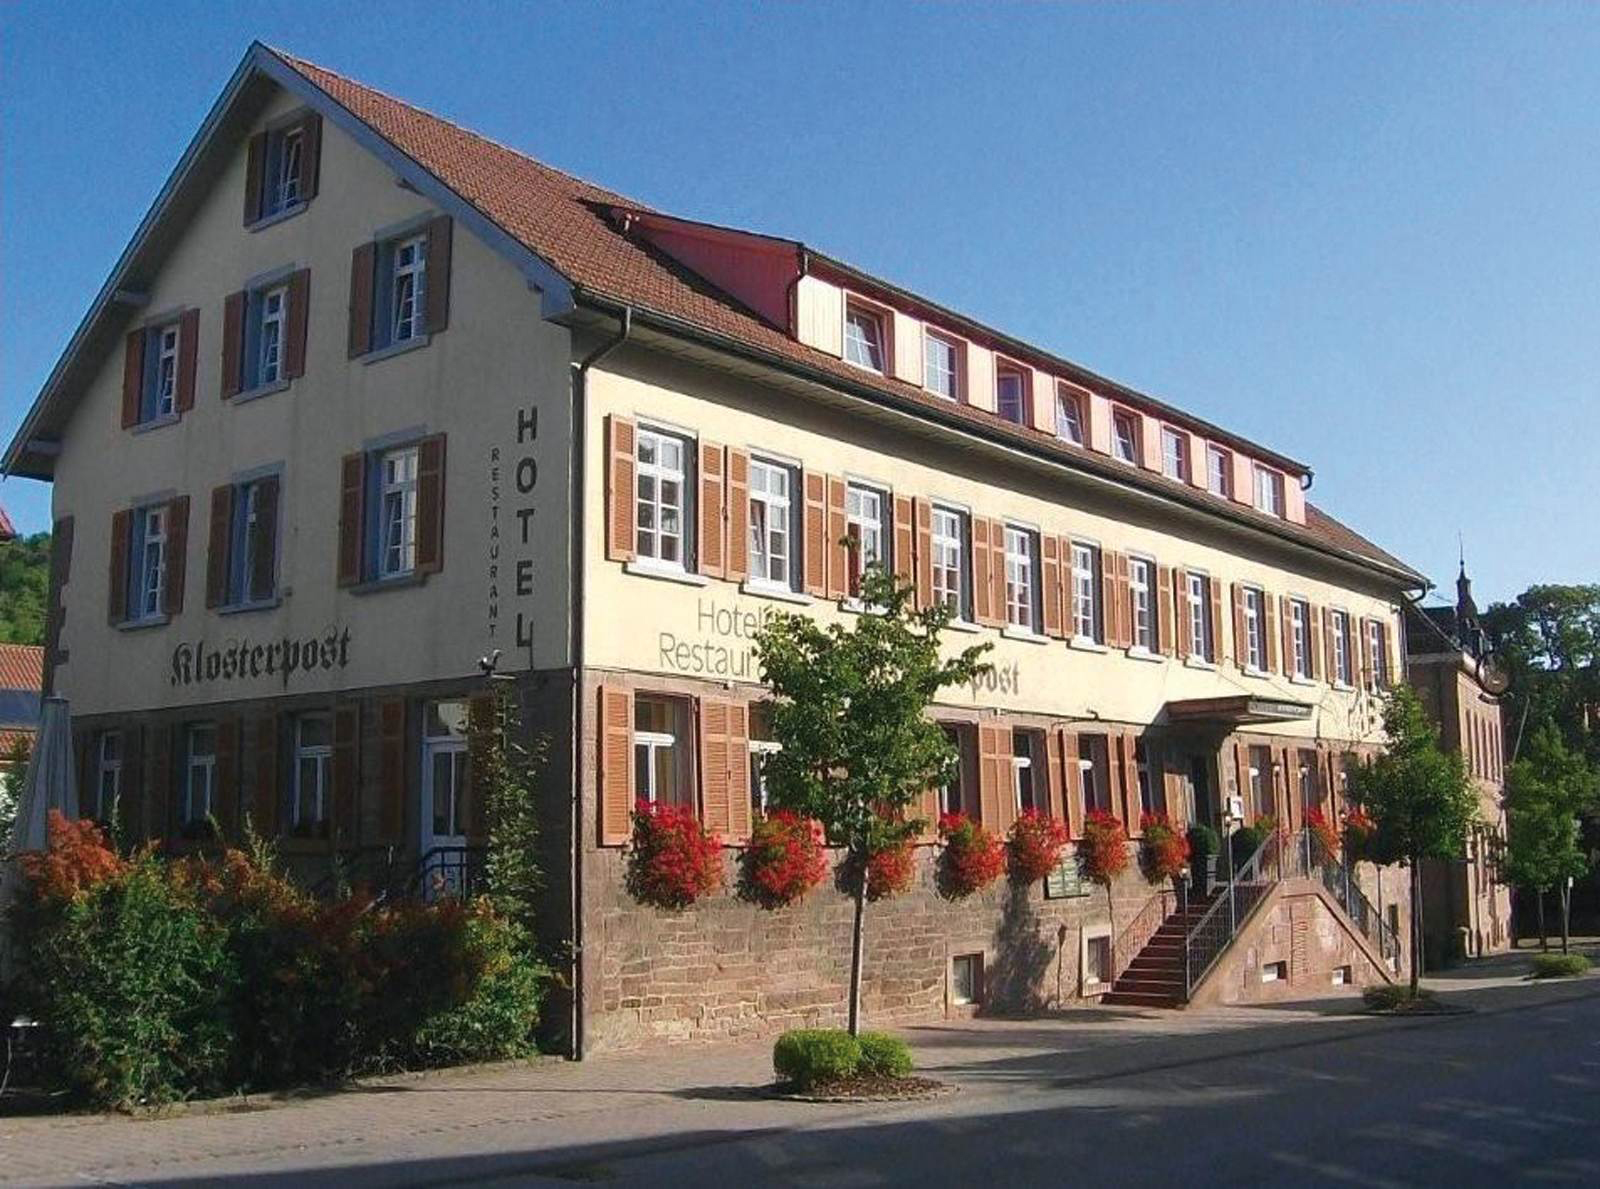 Hotel Klosterpost Aussenansicht